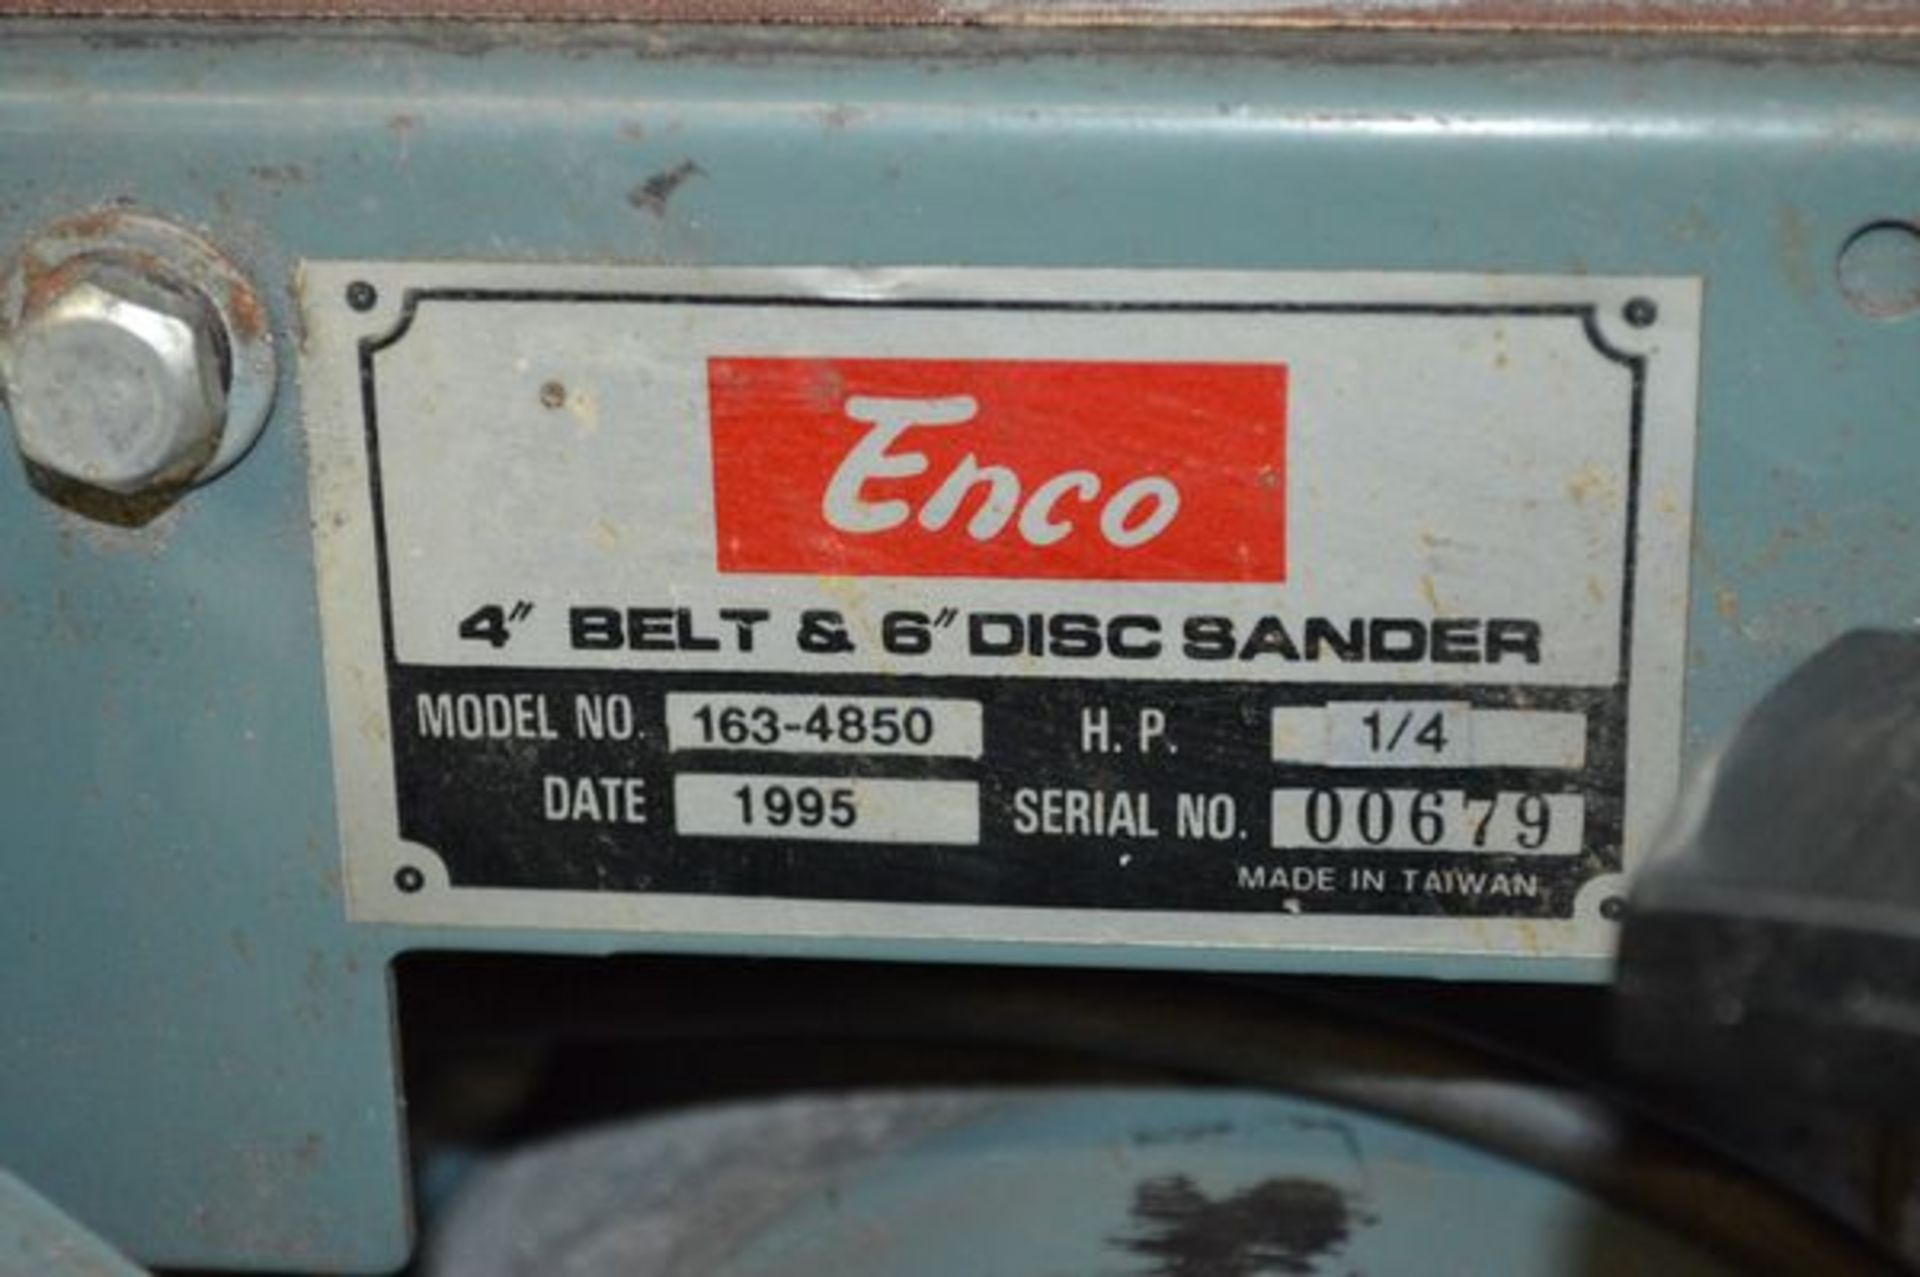 Enco 4" Belt and 6" Disc Sander Model 163-4850 - Image 2 of 4